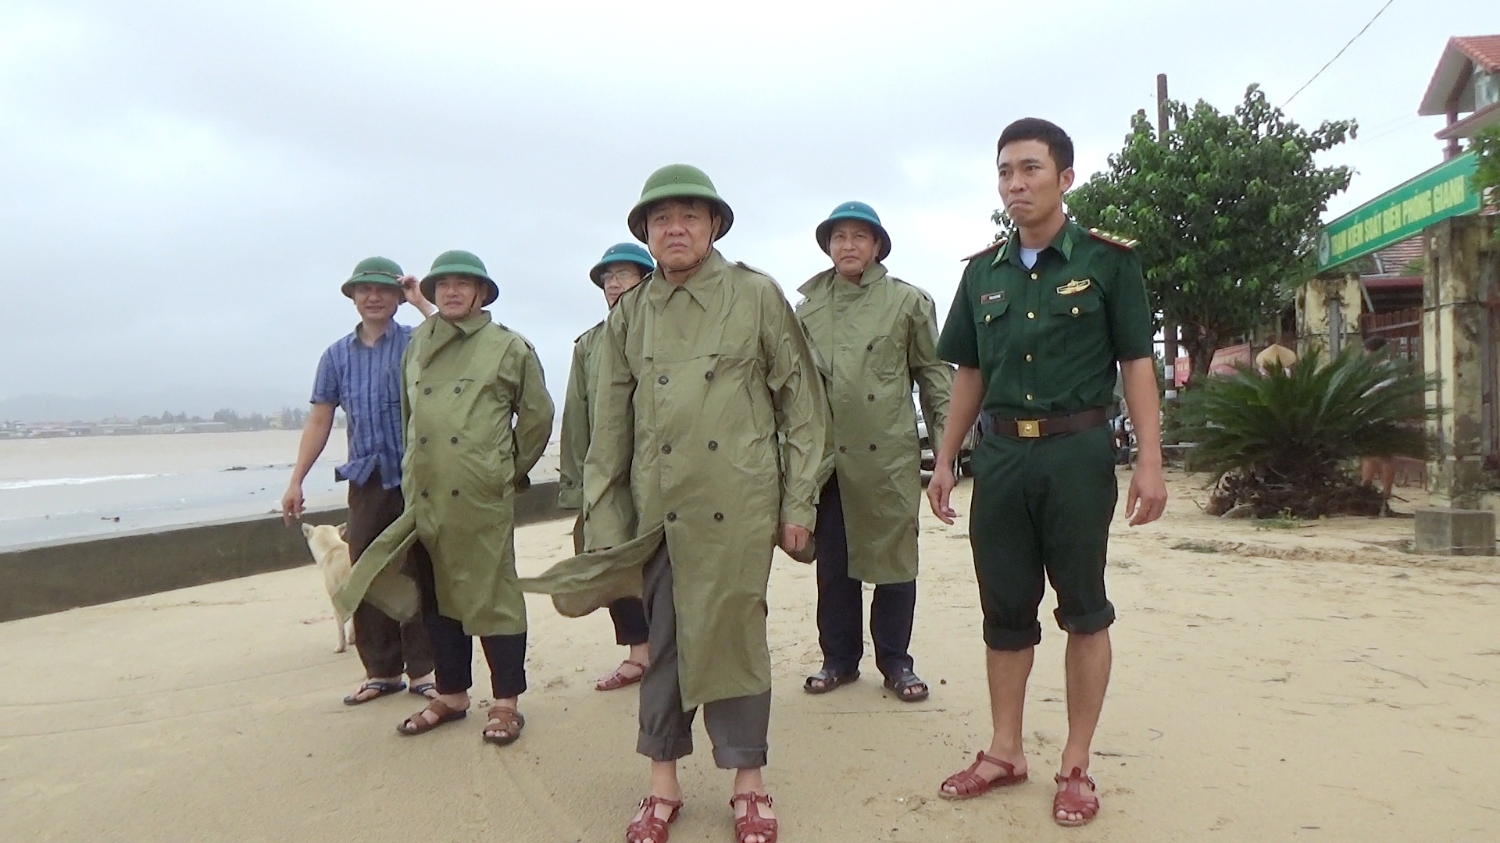 Đồng chí Đoàn Minh Thọ- Phó Bí thư thị ủy, Chủ tịch UBND thị xã kiểm tra tình hình mưa lũ tại Đồn biên phòng cửa khẩu Cảng Giang.